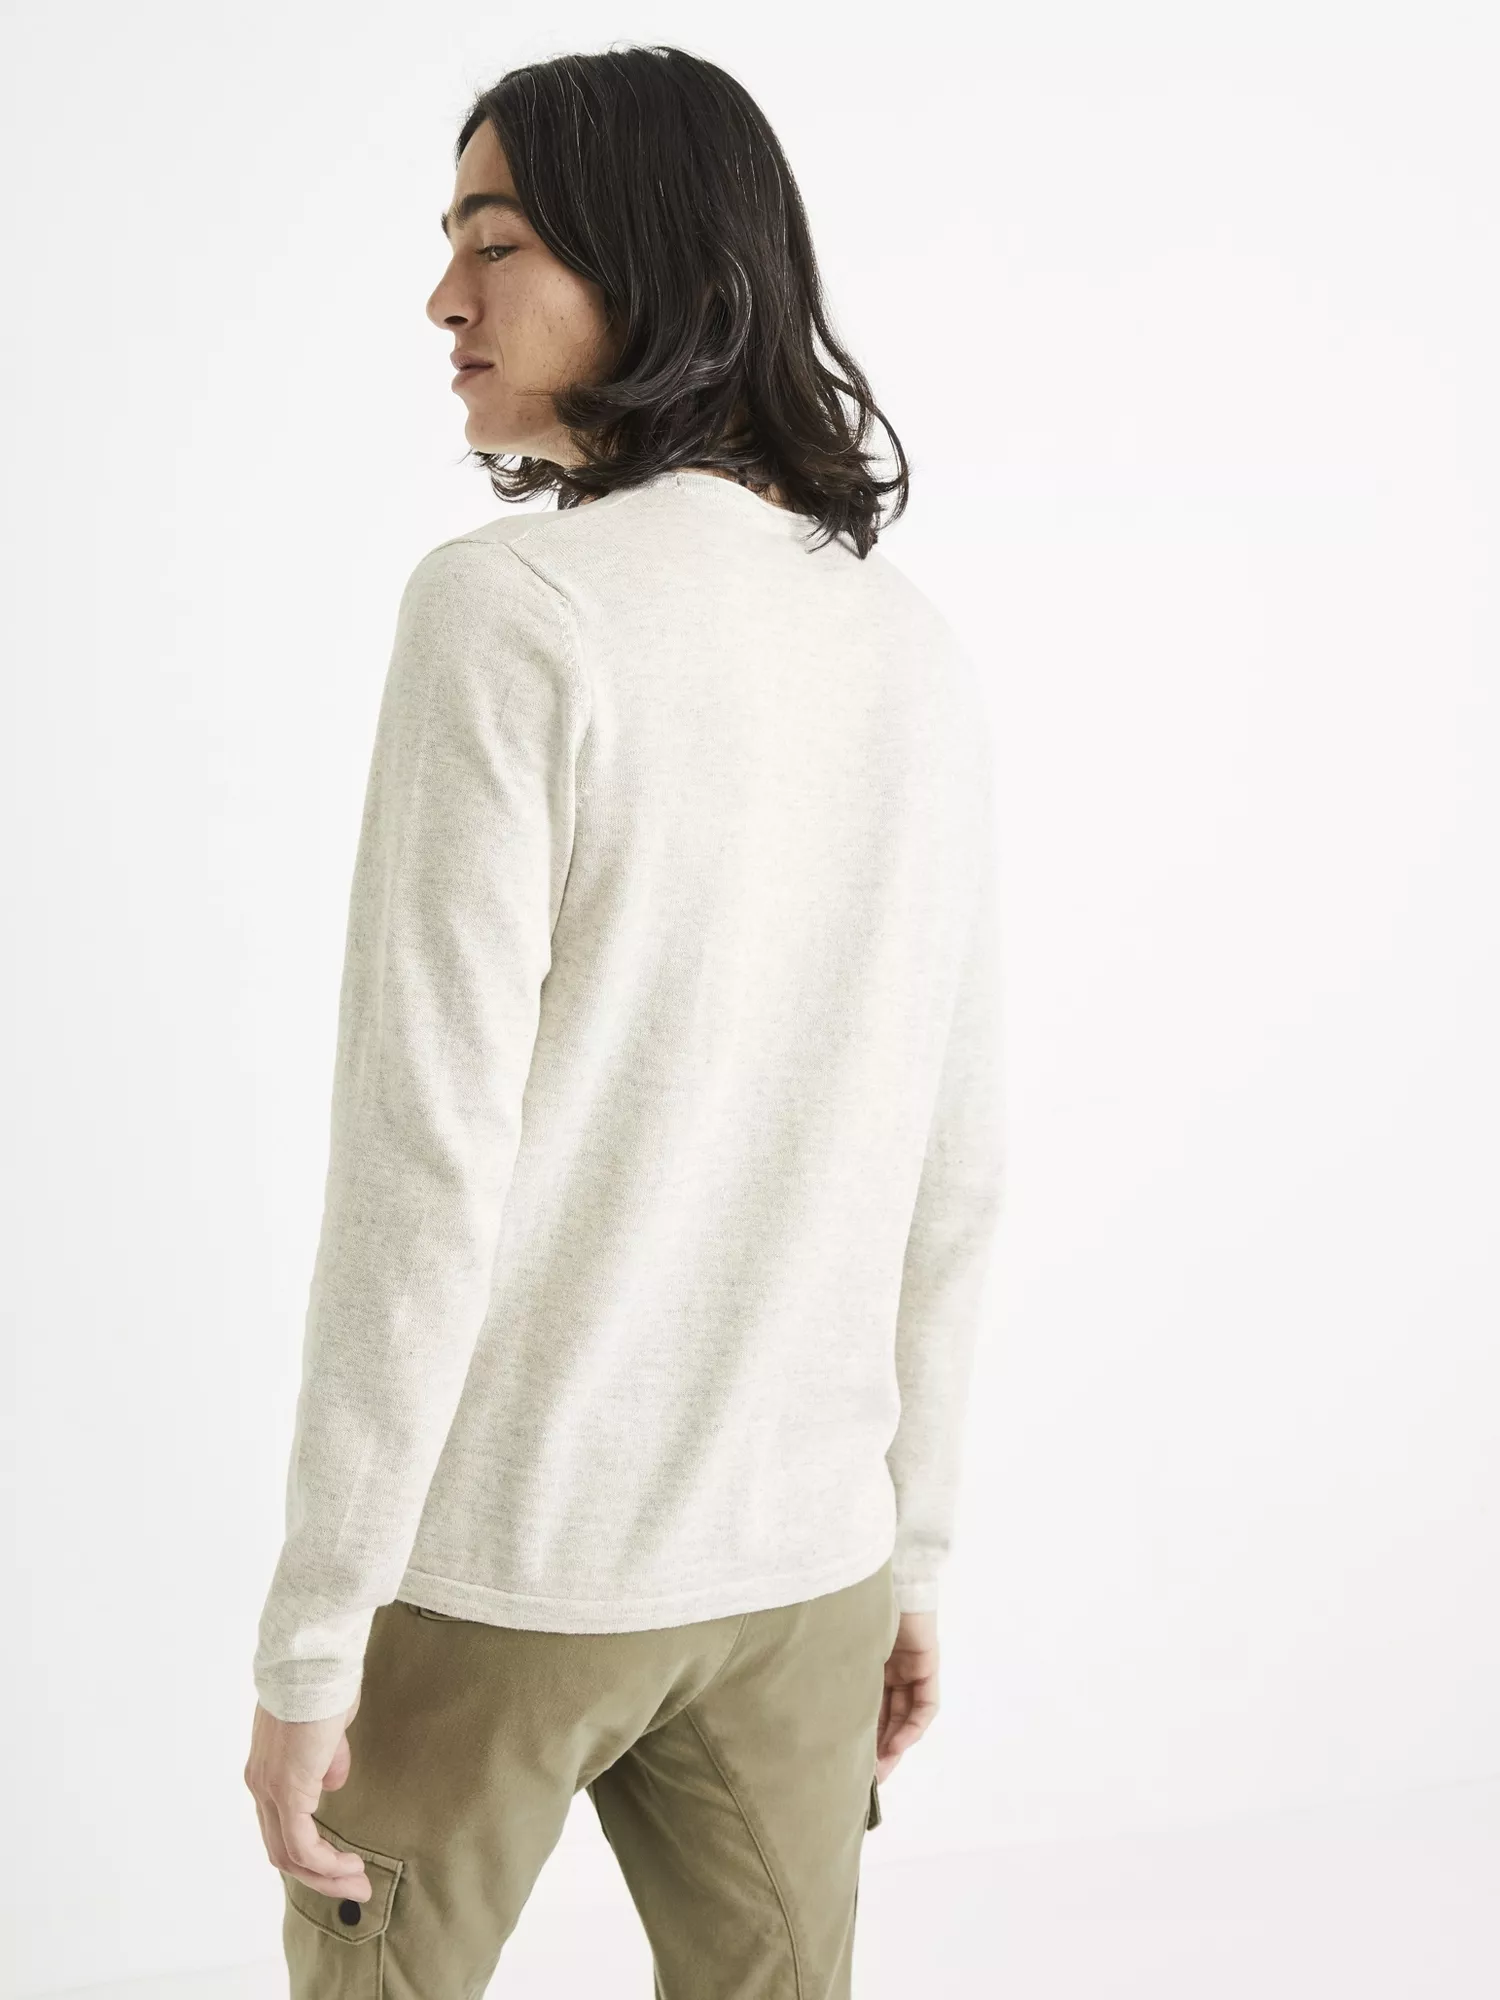 Hladký pletený svetr Tegenial (3)